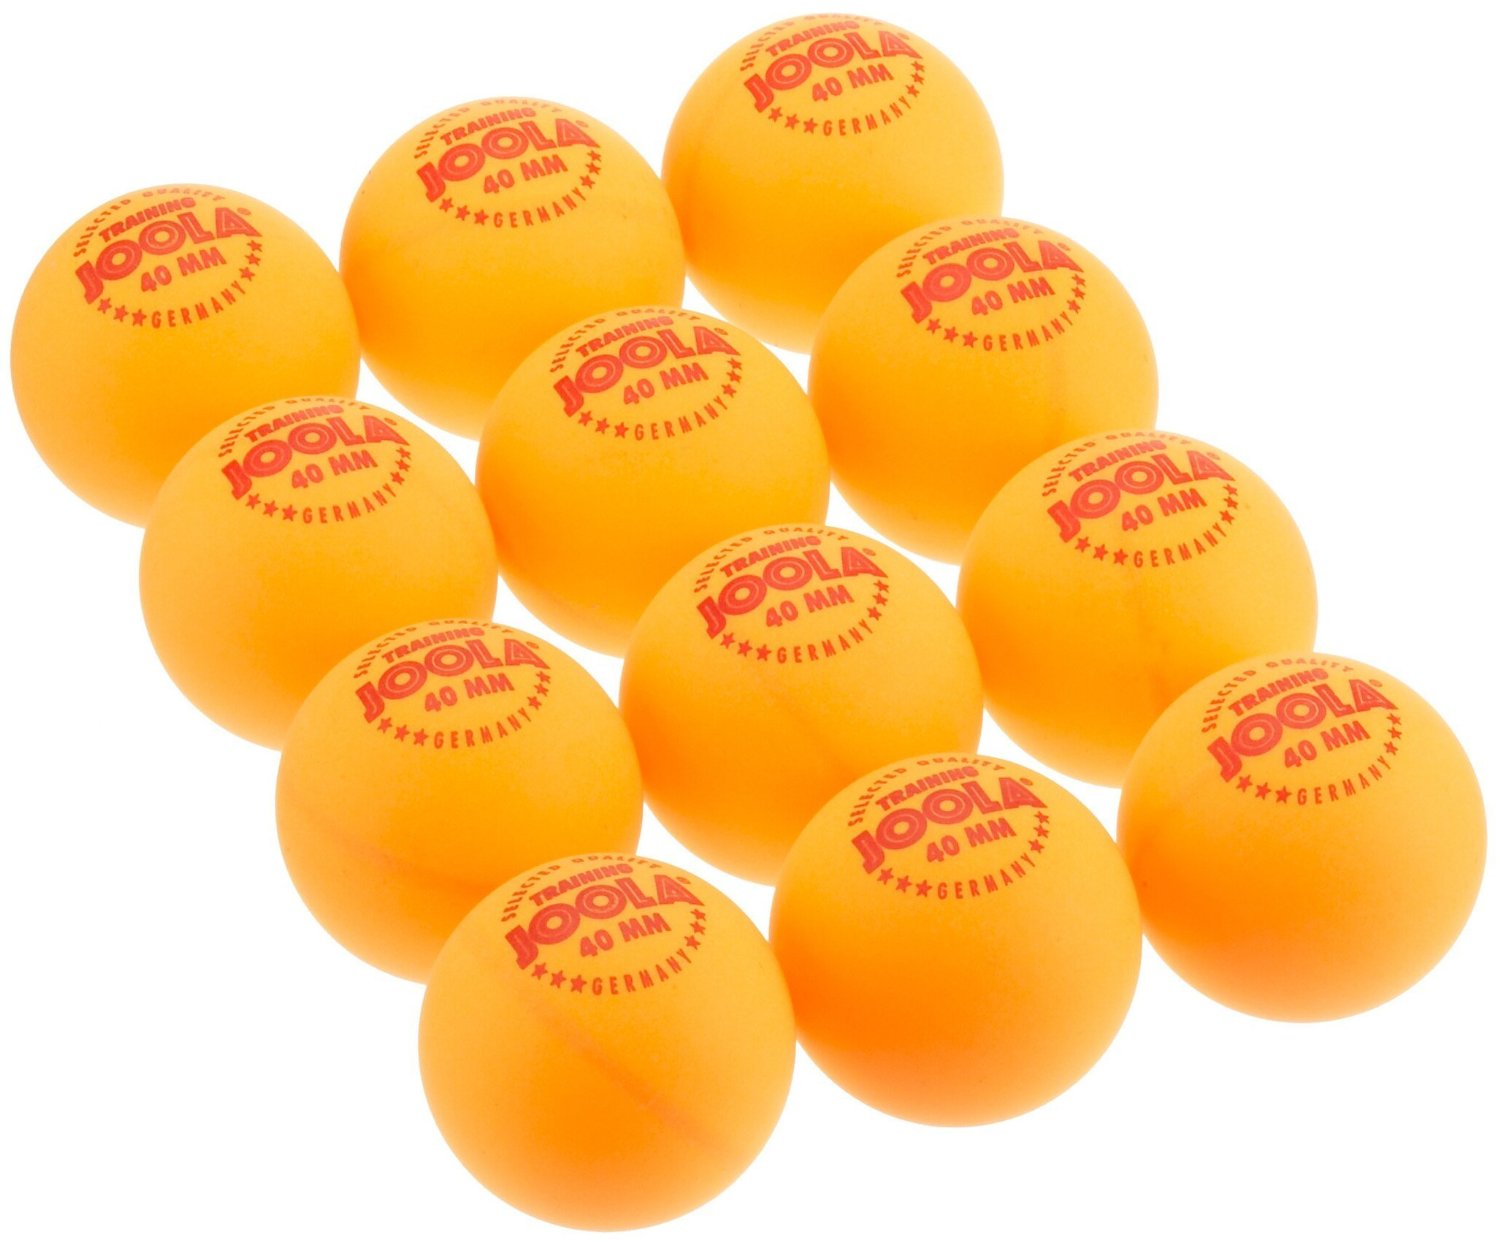 75 TT-Bälle Tischtennisbälle 38mm orange o Aufdruck stabile Qual. mit Rg aus D 